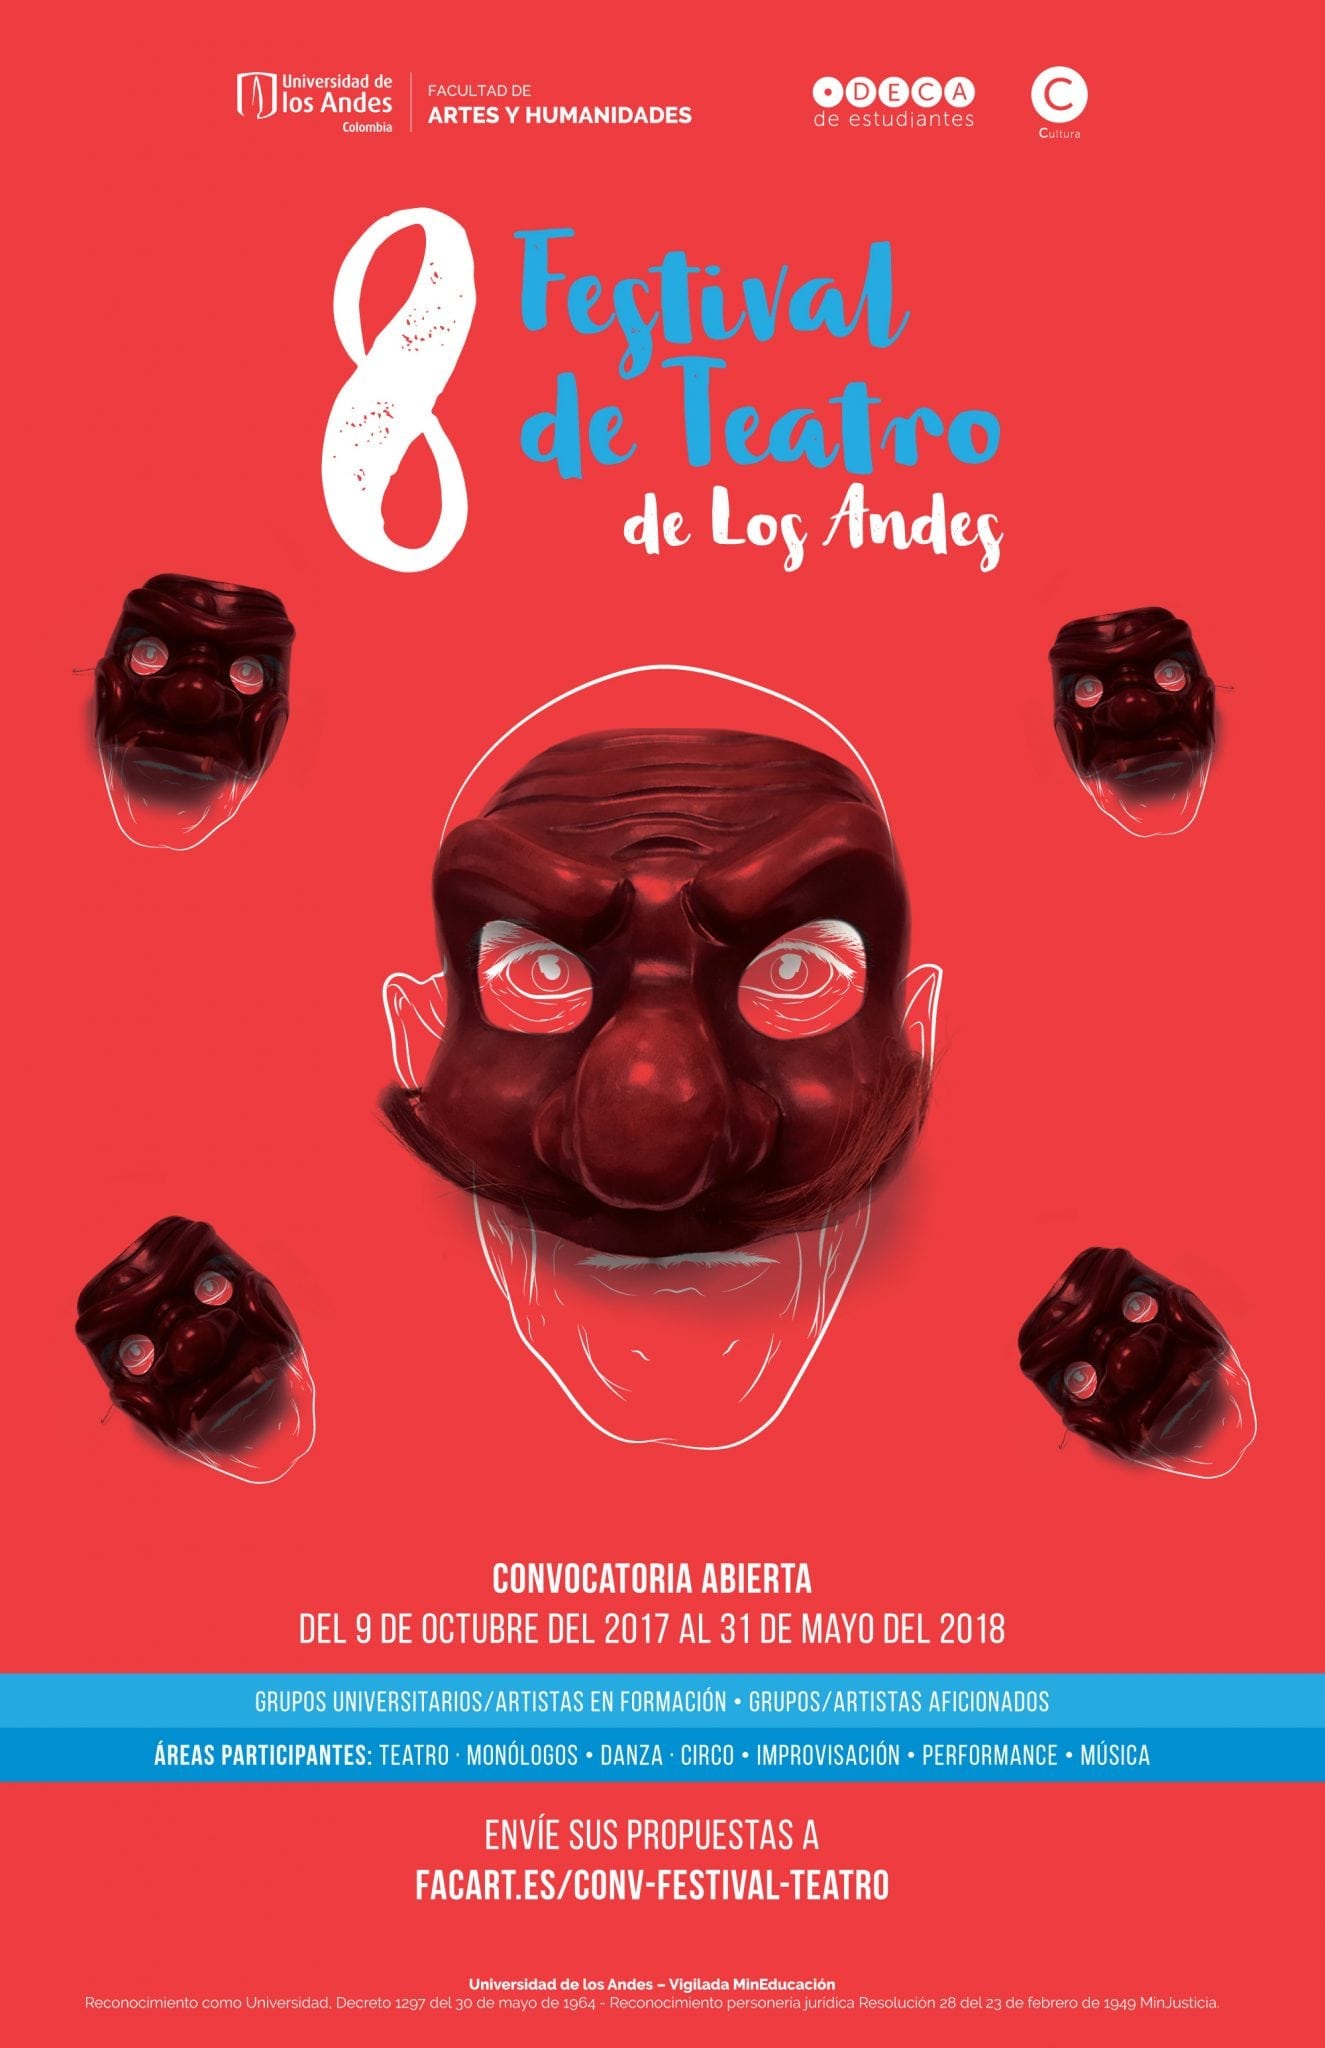 Convocatoria: 8 Festival de Teatro de Los Andes